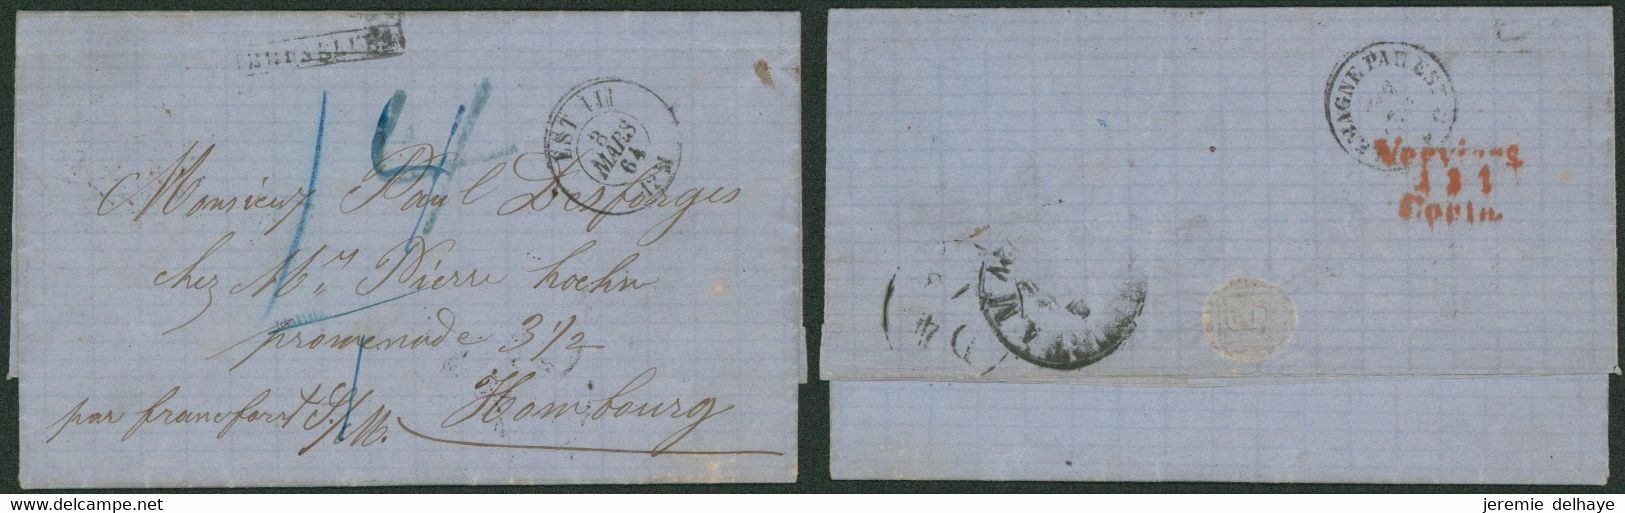 LAC Non Affranchie + Cachet Ambulant Est III (1864) Et Griffe Encadrée BRUXELLES > Hamburg + Passage "Allemagne Par Est - Ambulants